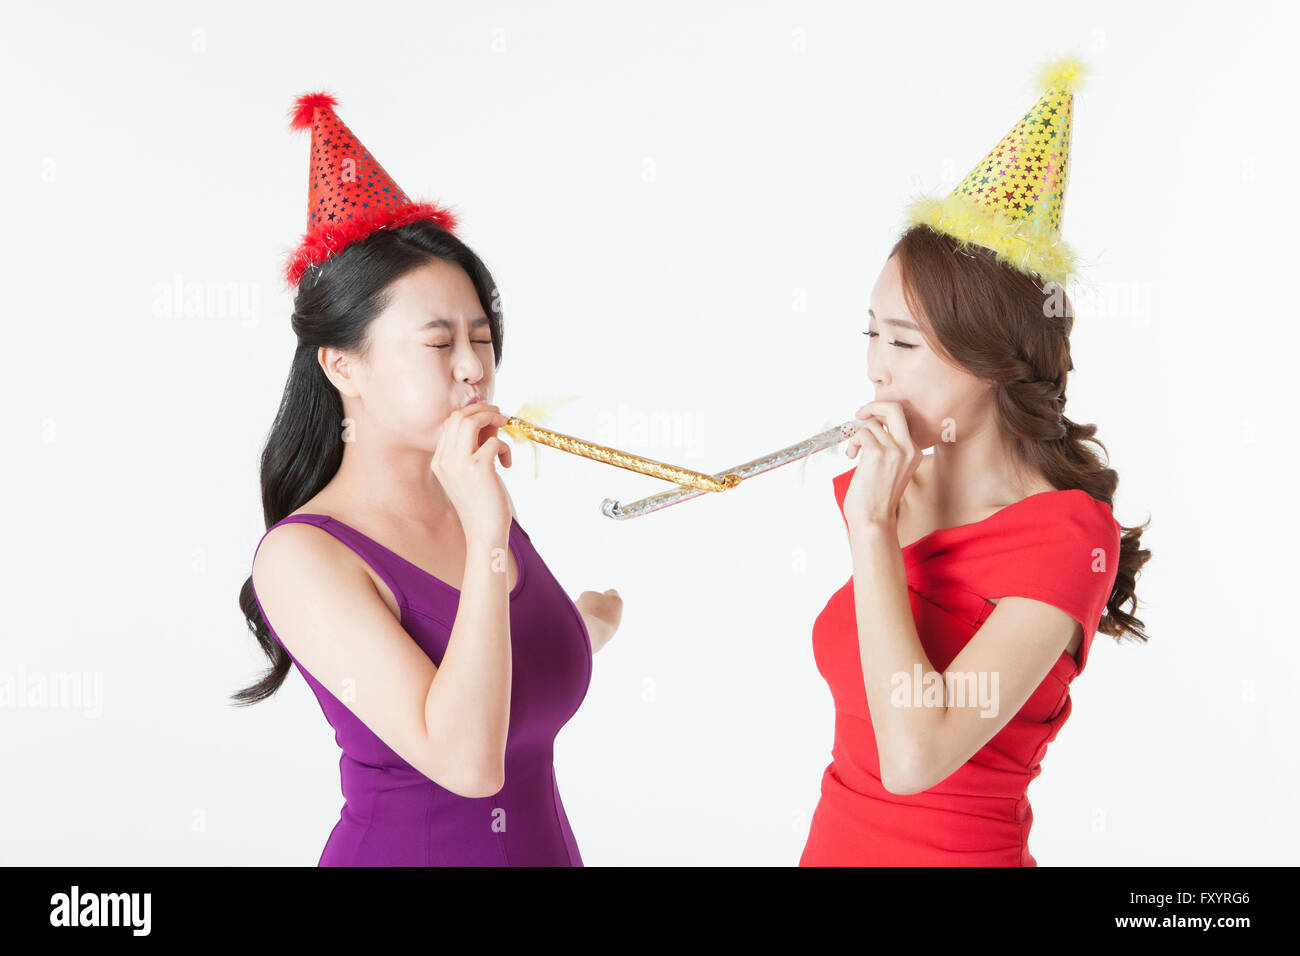 Vue de côté portrait de deux smiling women blowing party horns face à face Banque D'Images